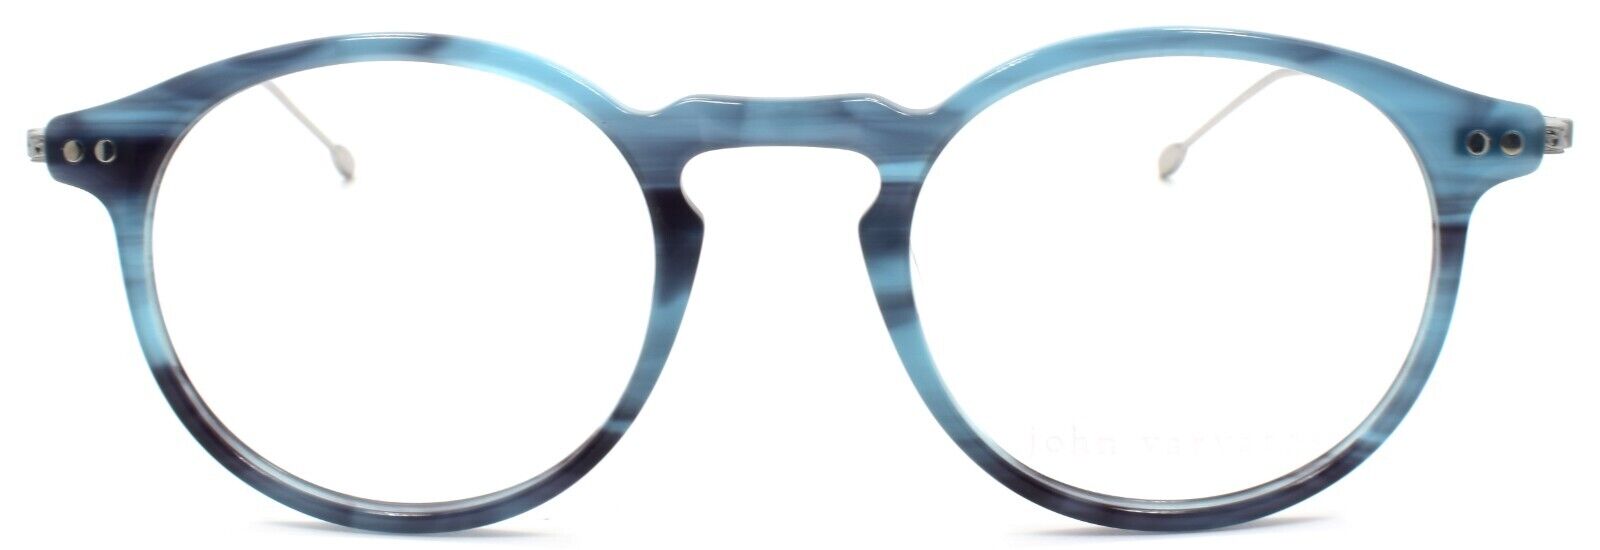 2-John Varvatos V377 Men's Eyeglasses Frames Round 48-22-145 Blue Japan-751286310474-IKSpecs